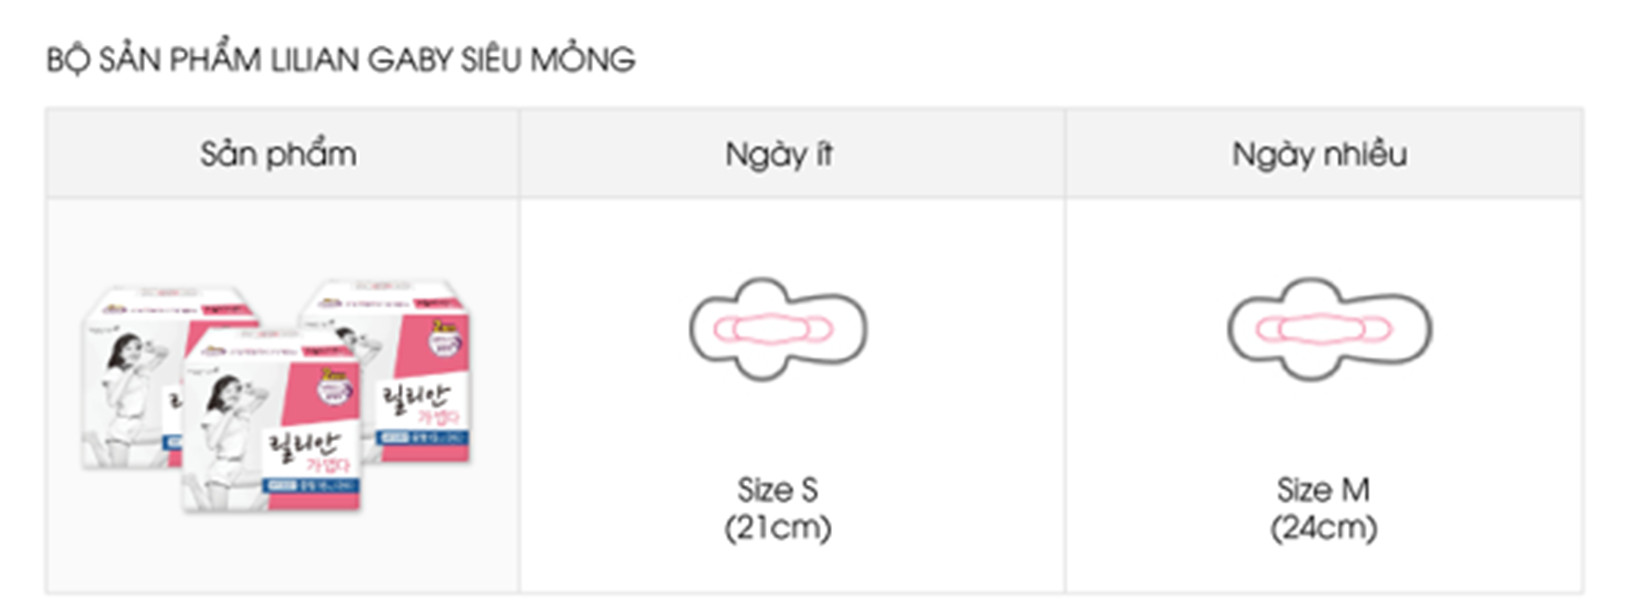 Băng vệ sinh siêu mỏng Lilian Gaby Hàn Quốc (24cm x 16 miếng) + Móc khoá